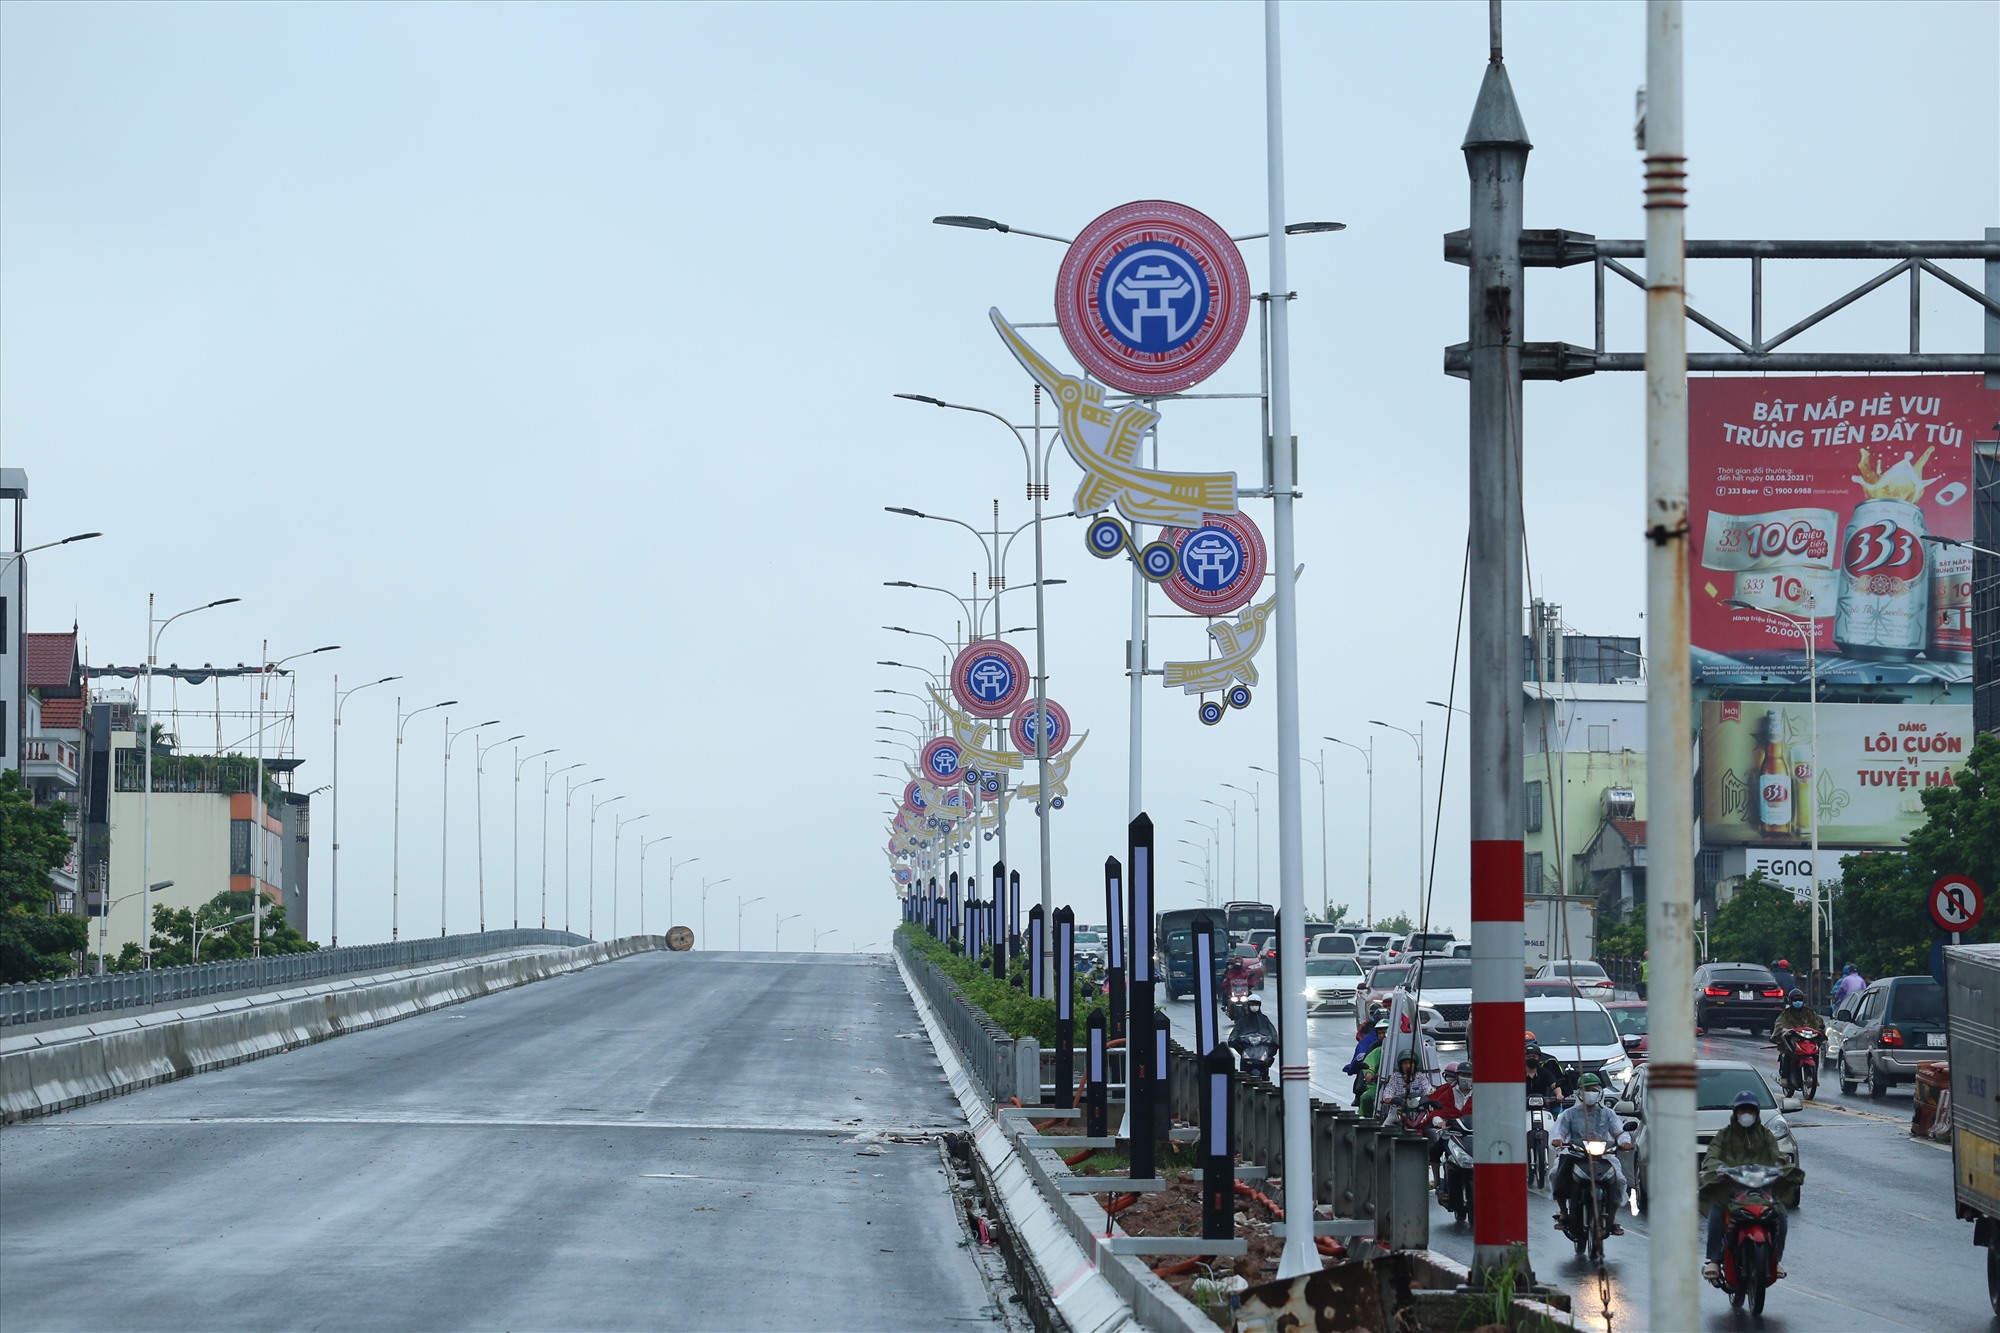 Cầu Vĩnh Tuy 2 chuẩn bị thông xe dip Quốc khánh 2.9. Ảnh: Vĩnh Hoàng